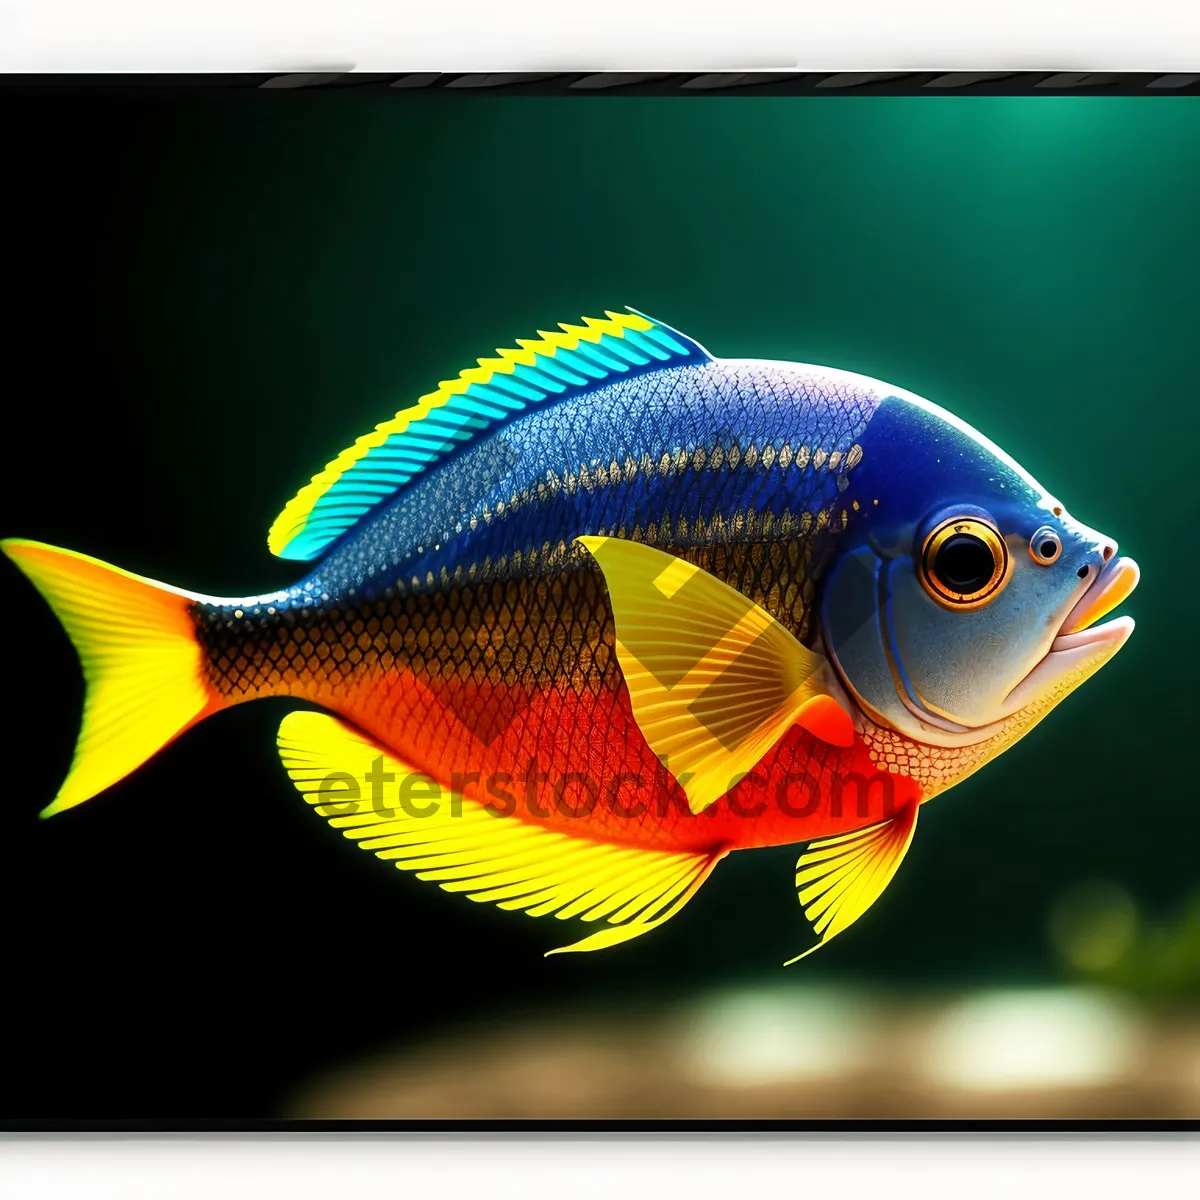 Picture of Colorful Marine Fish Swimming in Tropical Aquarium